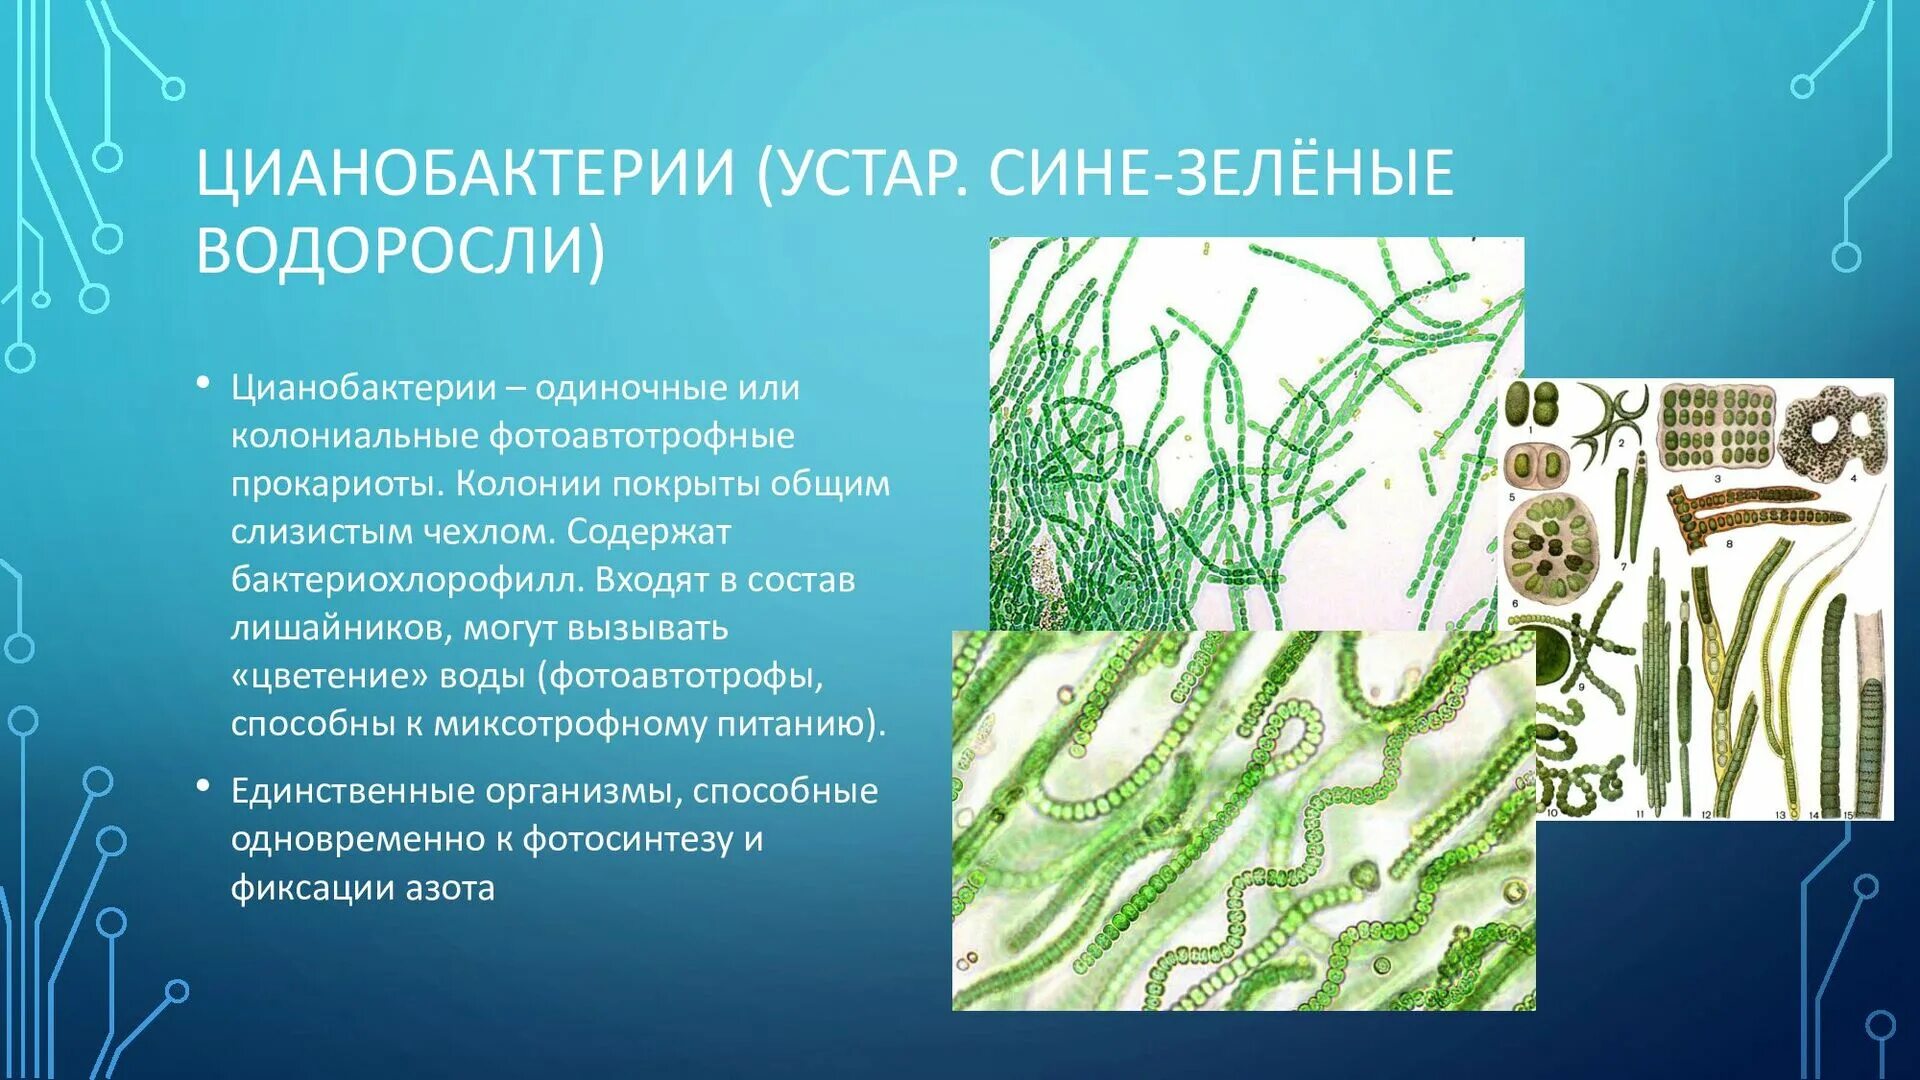 Цианобактерии относят к водорослям. Цианобактерии сине-зеленые водоросли. Цианобактерия это водоросль. Хамесифоновые цианобактерии. Фотосинтезирующие цианобактерии.